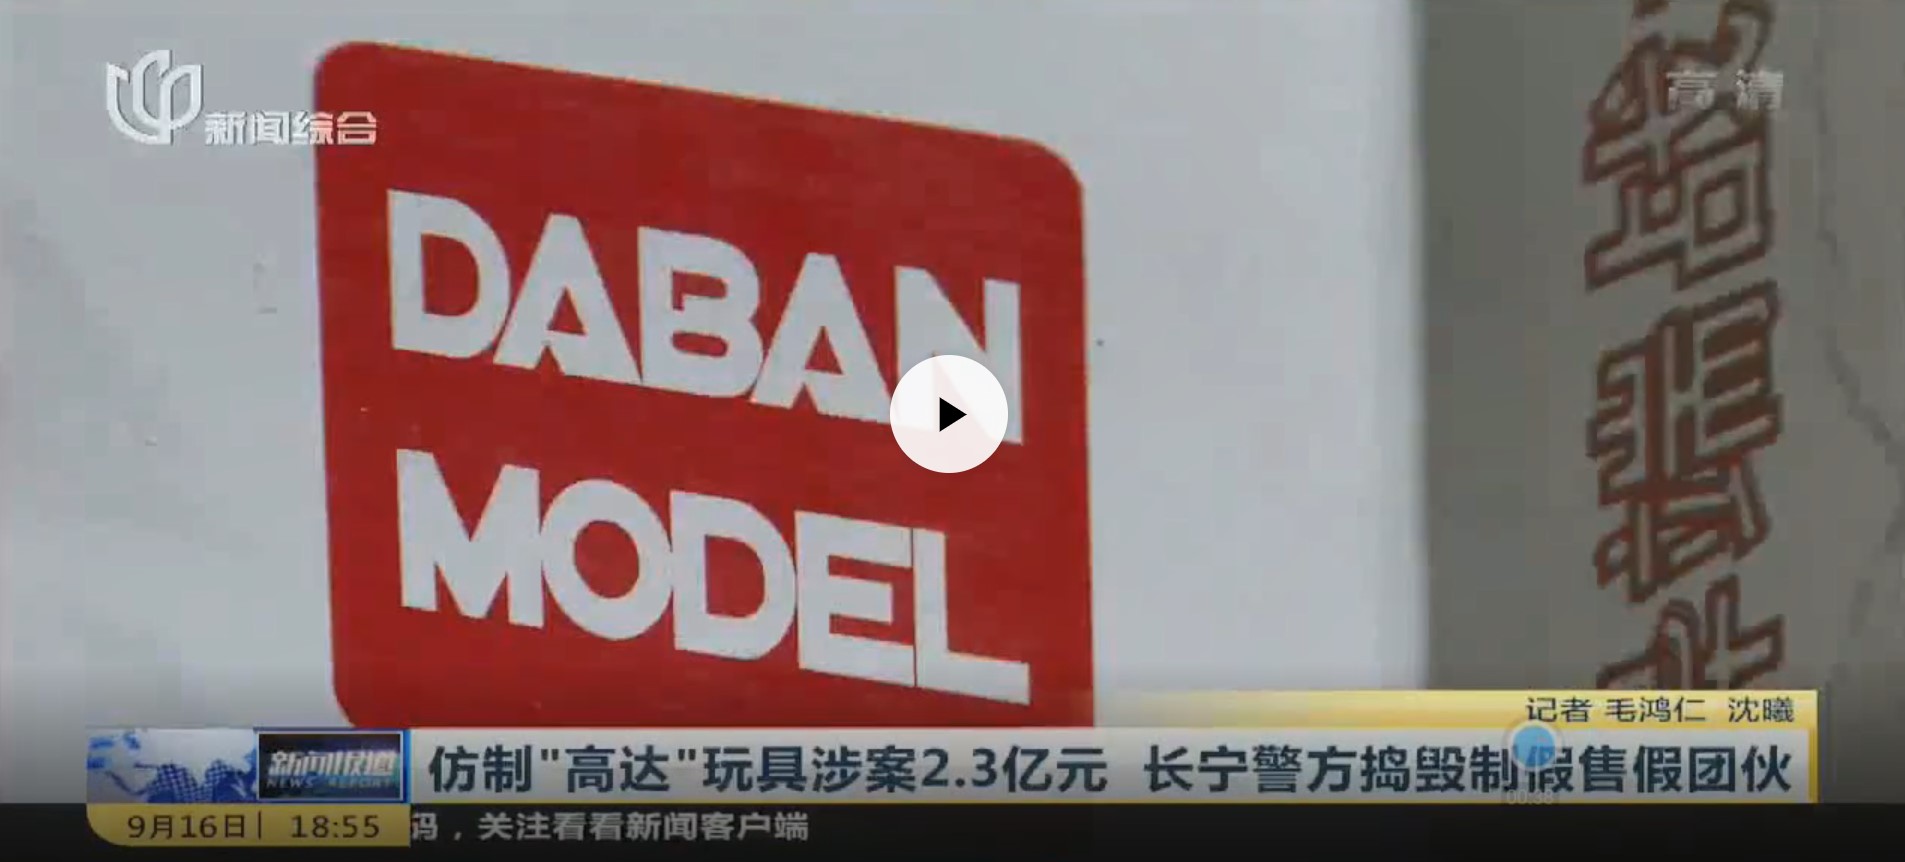 ガンプラ】中国史上最大の海賊版メーカー 「DABAN MODEL（大班模型）」が摘発、被害総額は約37億円 ｜ fig速-フィギュア・プラモ  新作ホビー情報まとめ